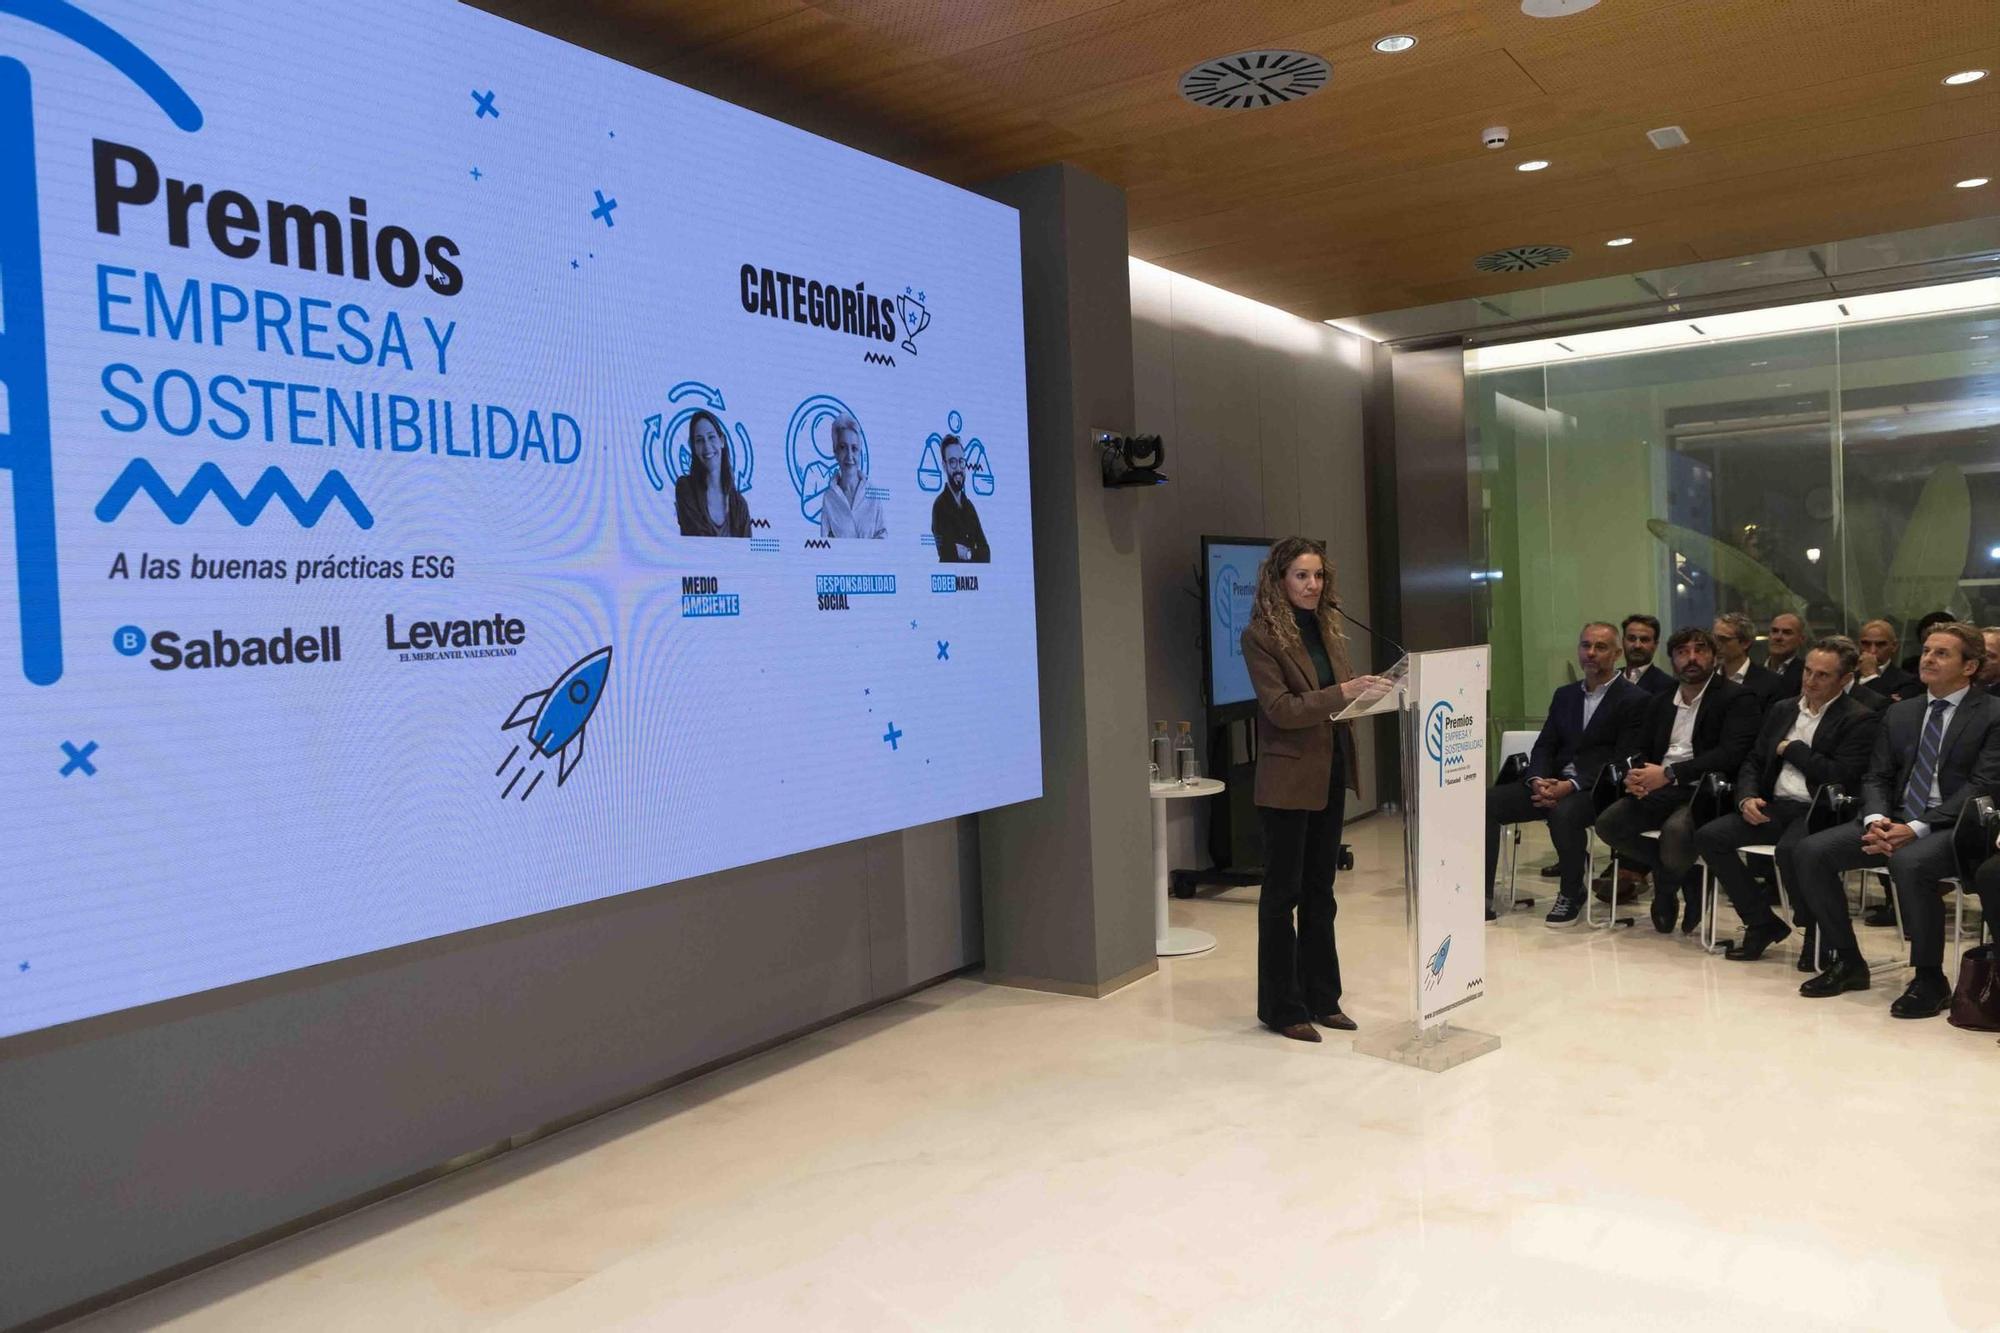 Premios Empresa y Sostenibilidad del Banco Sabadell